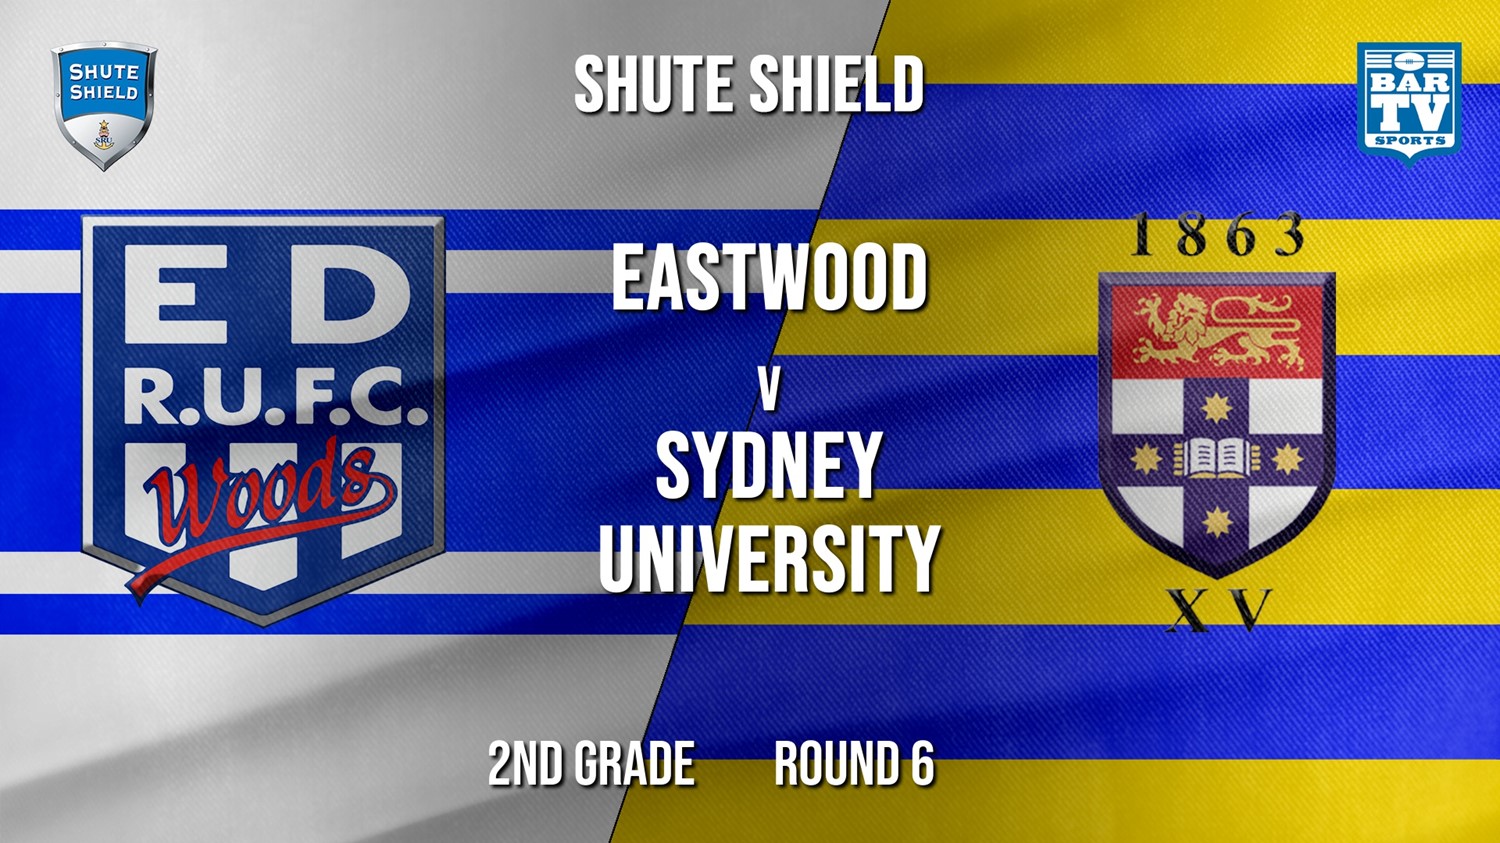 Shute Shield Round 6 - 2nd Grade - Eastwood v Sydney University Minigame Slate Image